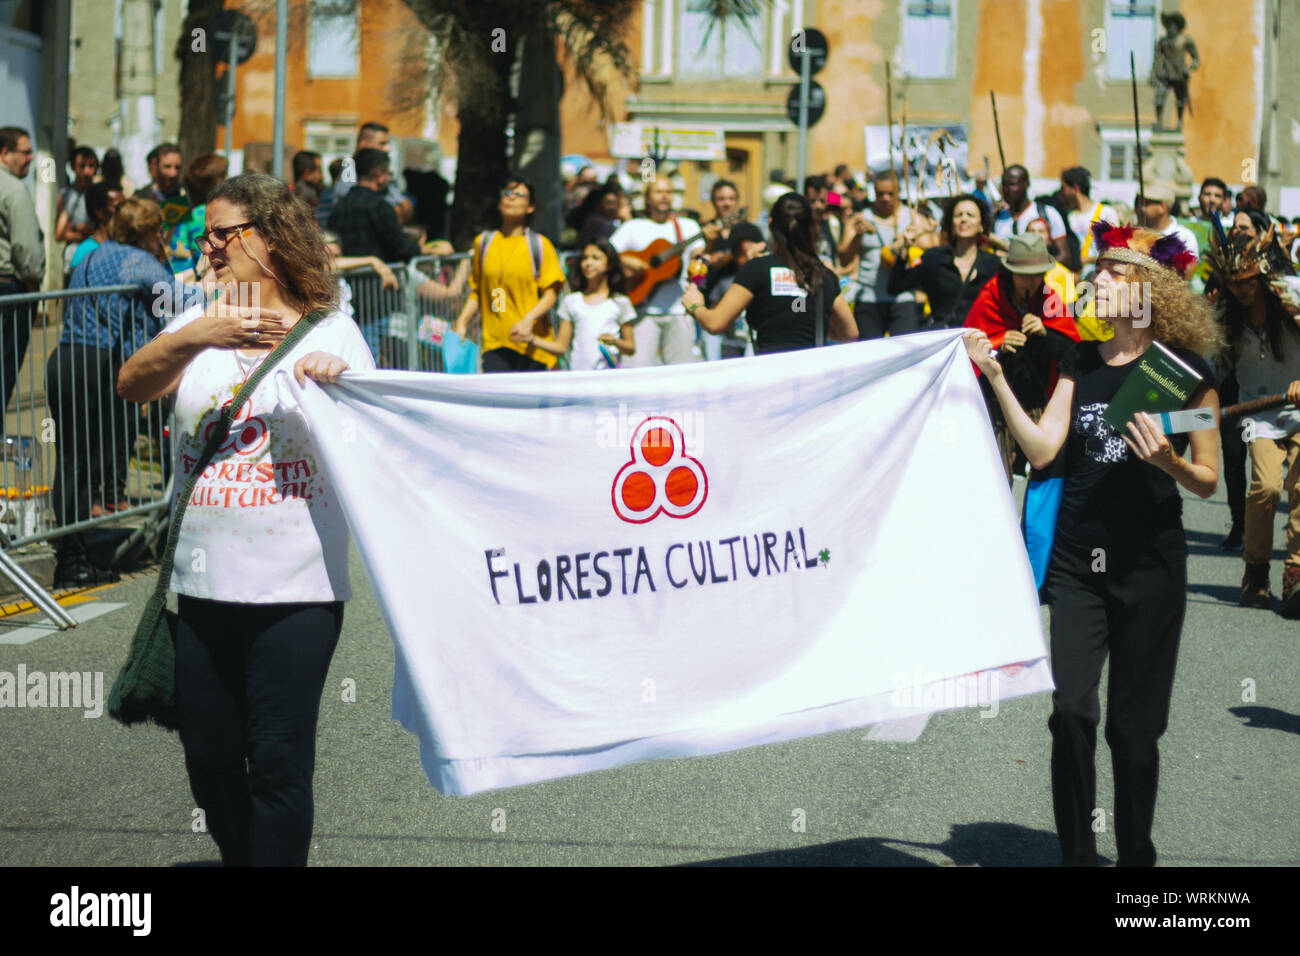 Foule dans les rues avec des femmes tenant une bannière, manifestation dans un environnement pro à pied, de protestation au cours de la journée de l'indépendance brésilienne Banque D'Images